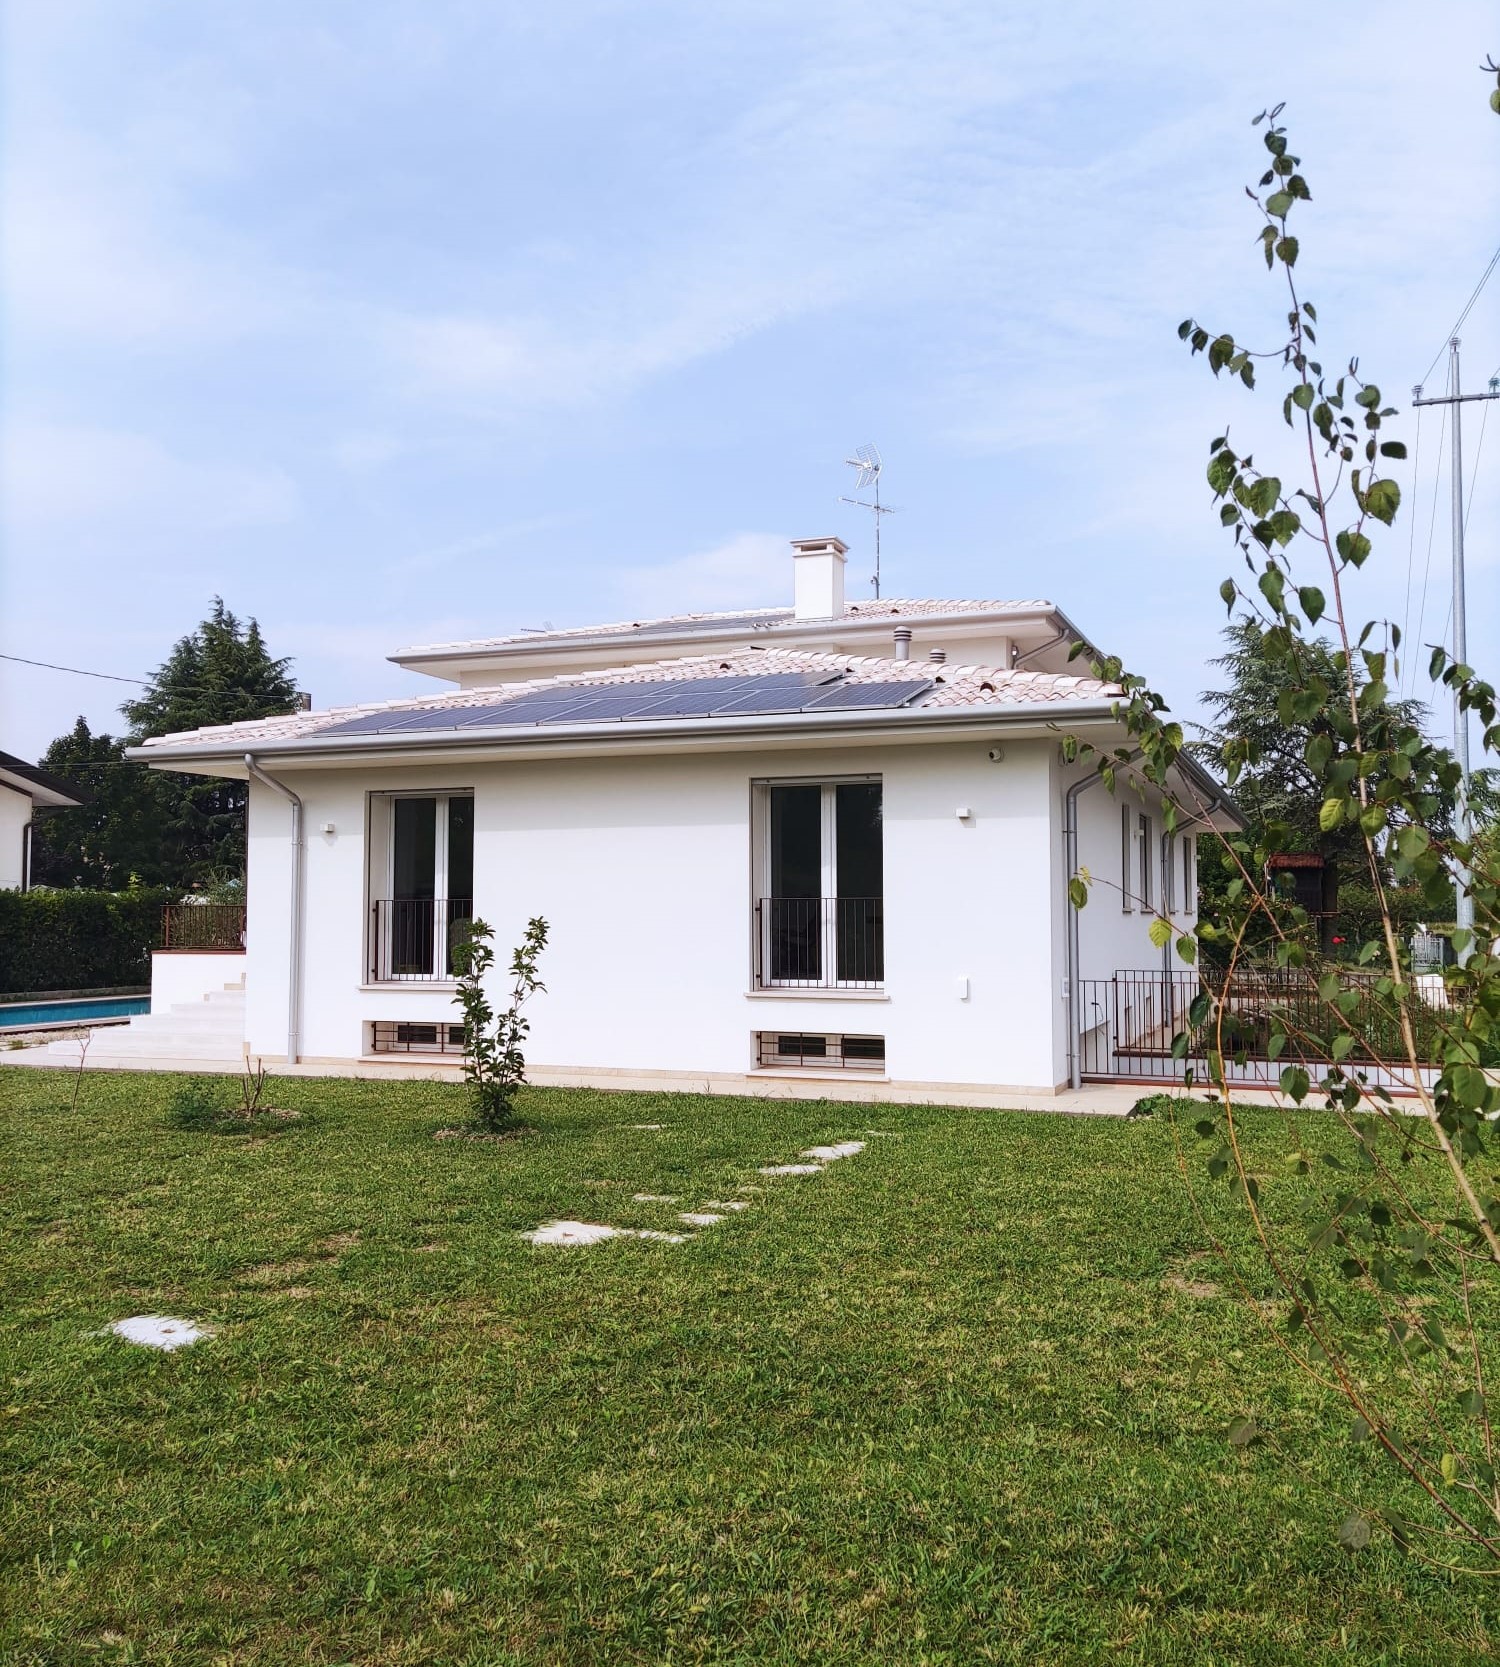 Fotovoltaico ad alta efficienza | abitazione privata | Villorba (TV)